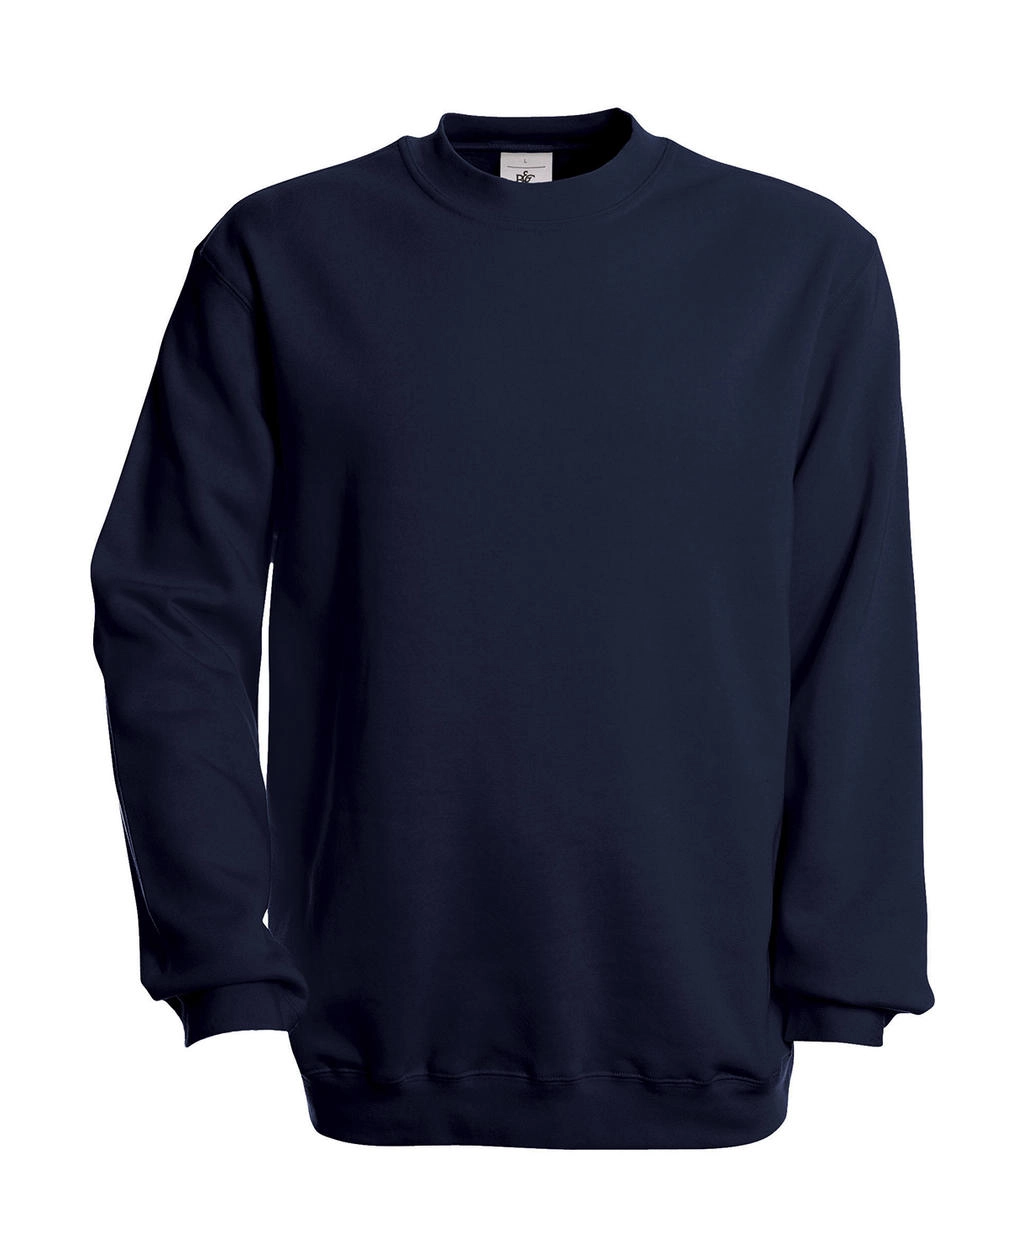 Set In Sweatshirt zum Besticken und Bedrucken in der Farbe Navy mit Ihren Logo, Schriftzug oder Motiv.